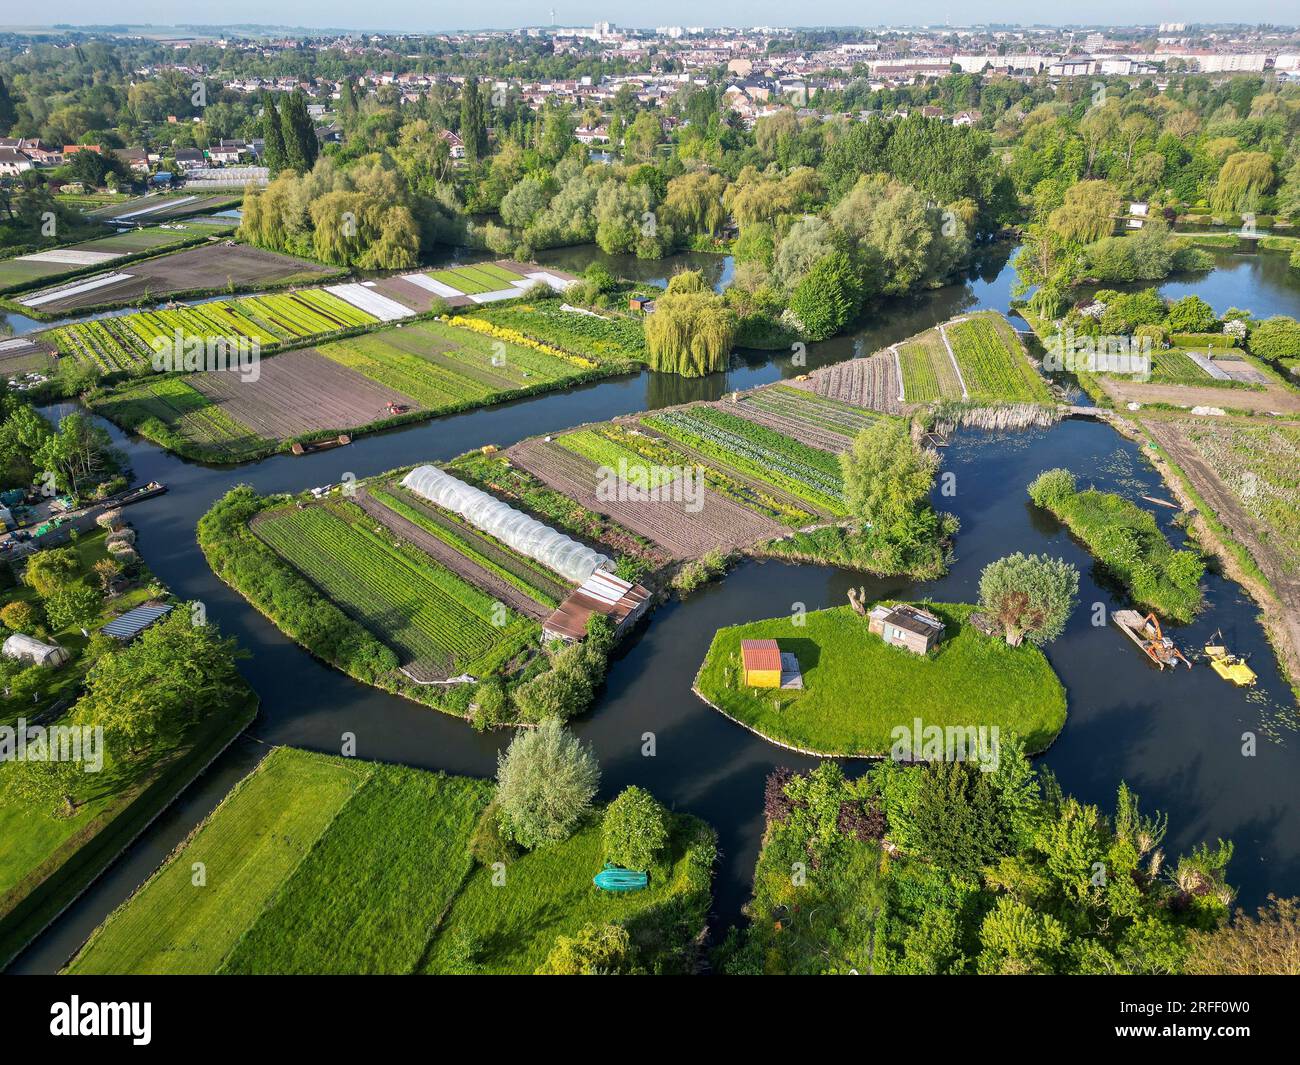 Frankreich, Somme, Vallée de la Somme, Amiens, die Hortillonnagen von Amiens, eine Reihe schwimmender Gärten in einem Labyrinth von 65 km Kanälen, im Herzen der Stadt Amiens (Luftaufnahme) Stockfoto